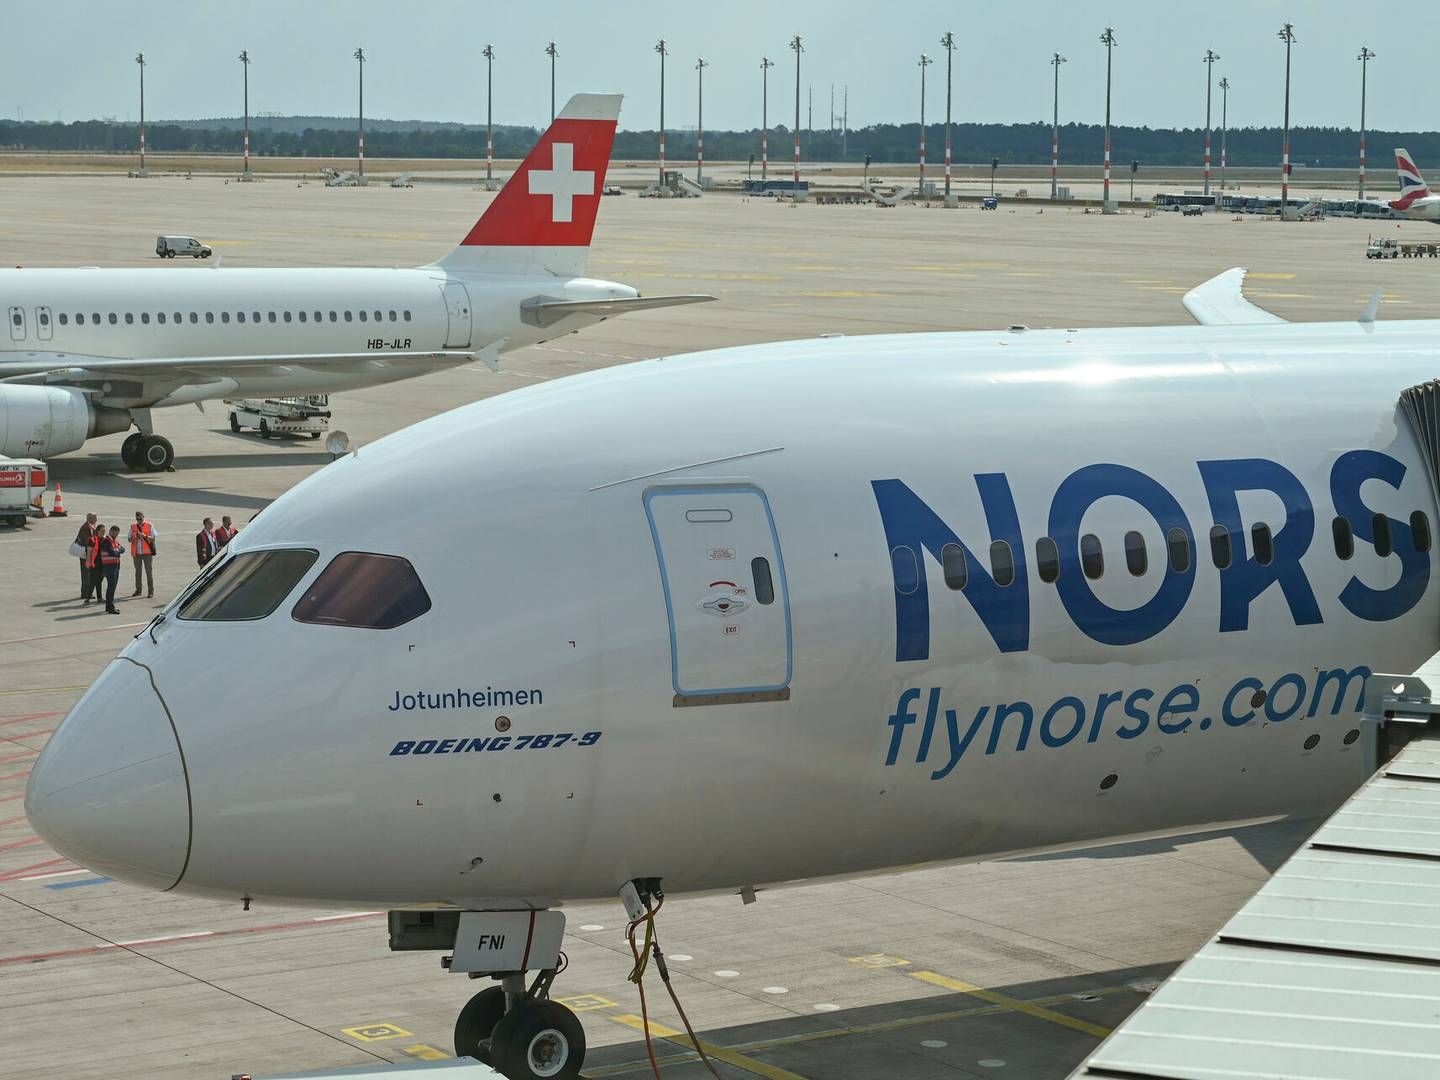 Ifølge bestyrelsen, kan der blive brug for yderligere kapital det norske langdistanceflyselskab. | Foto: Patrick Pleul/AP/Ritzau Scanpix